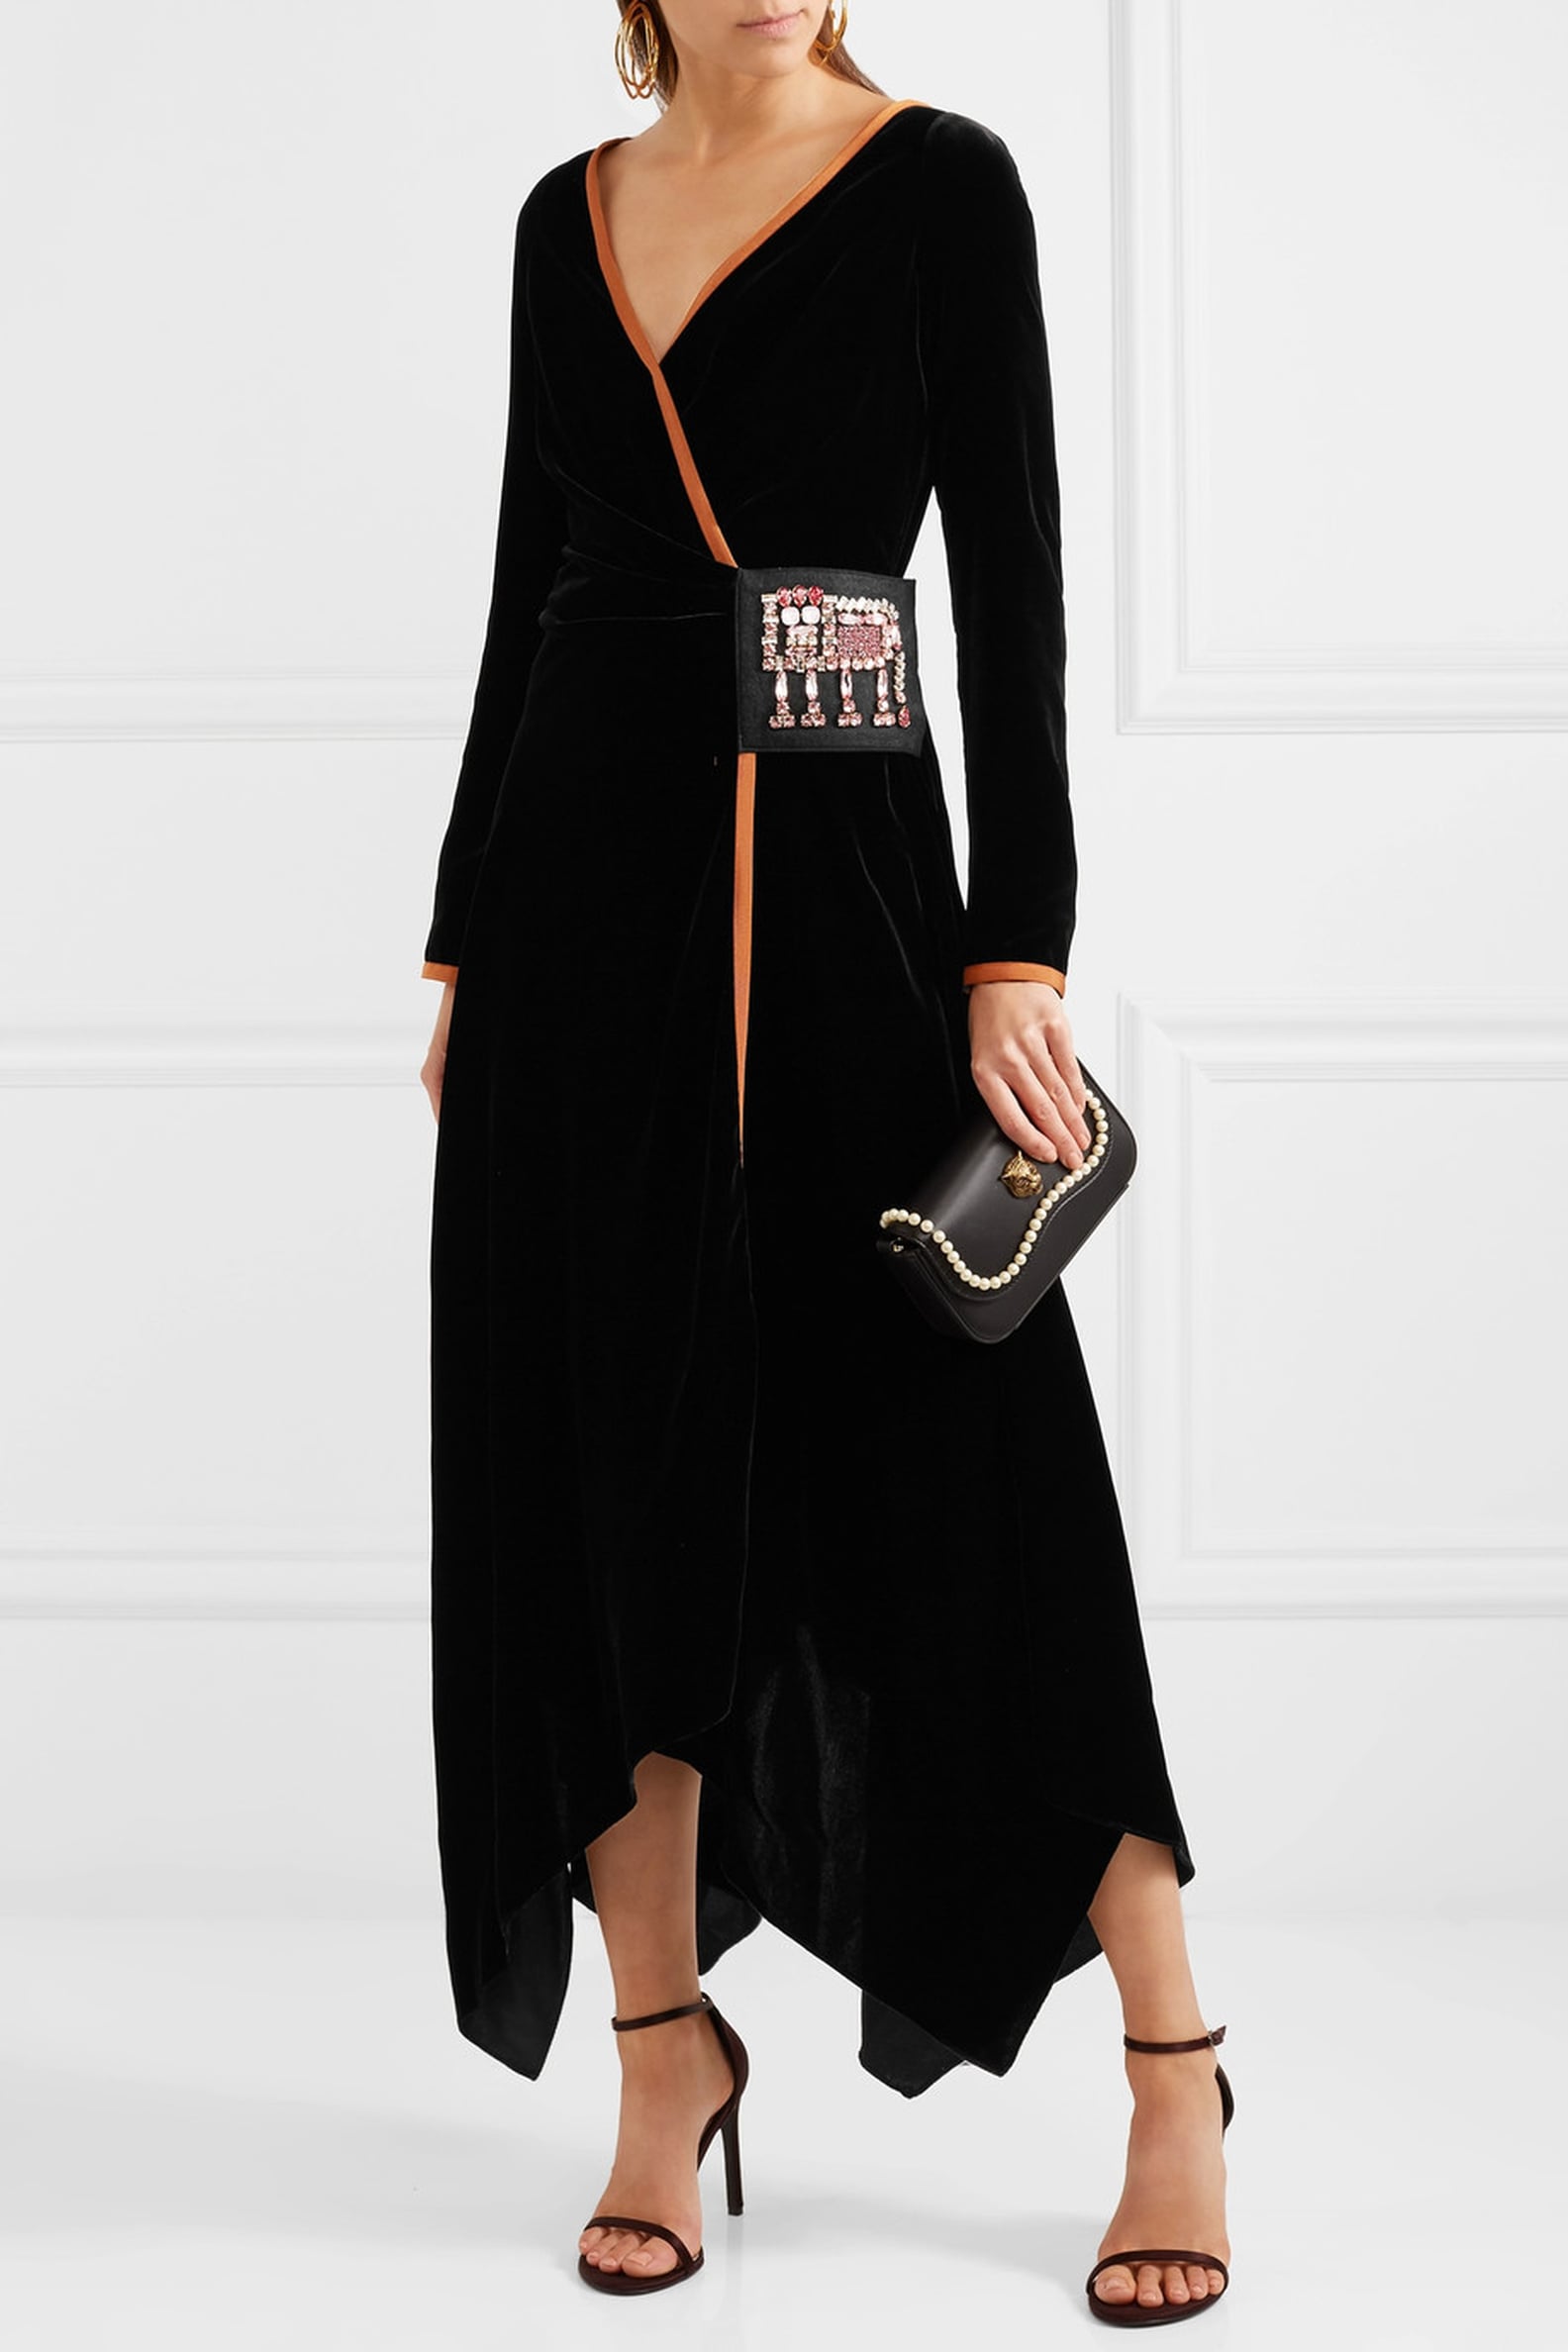 Kate Middleton Velvet Catherine Walker Dress | POPSUGAR Fashion